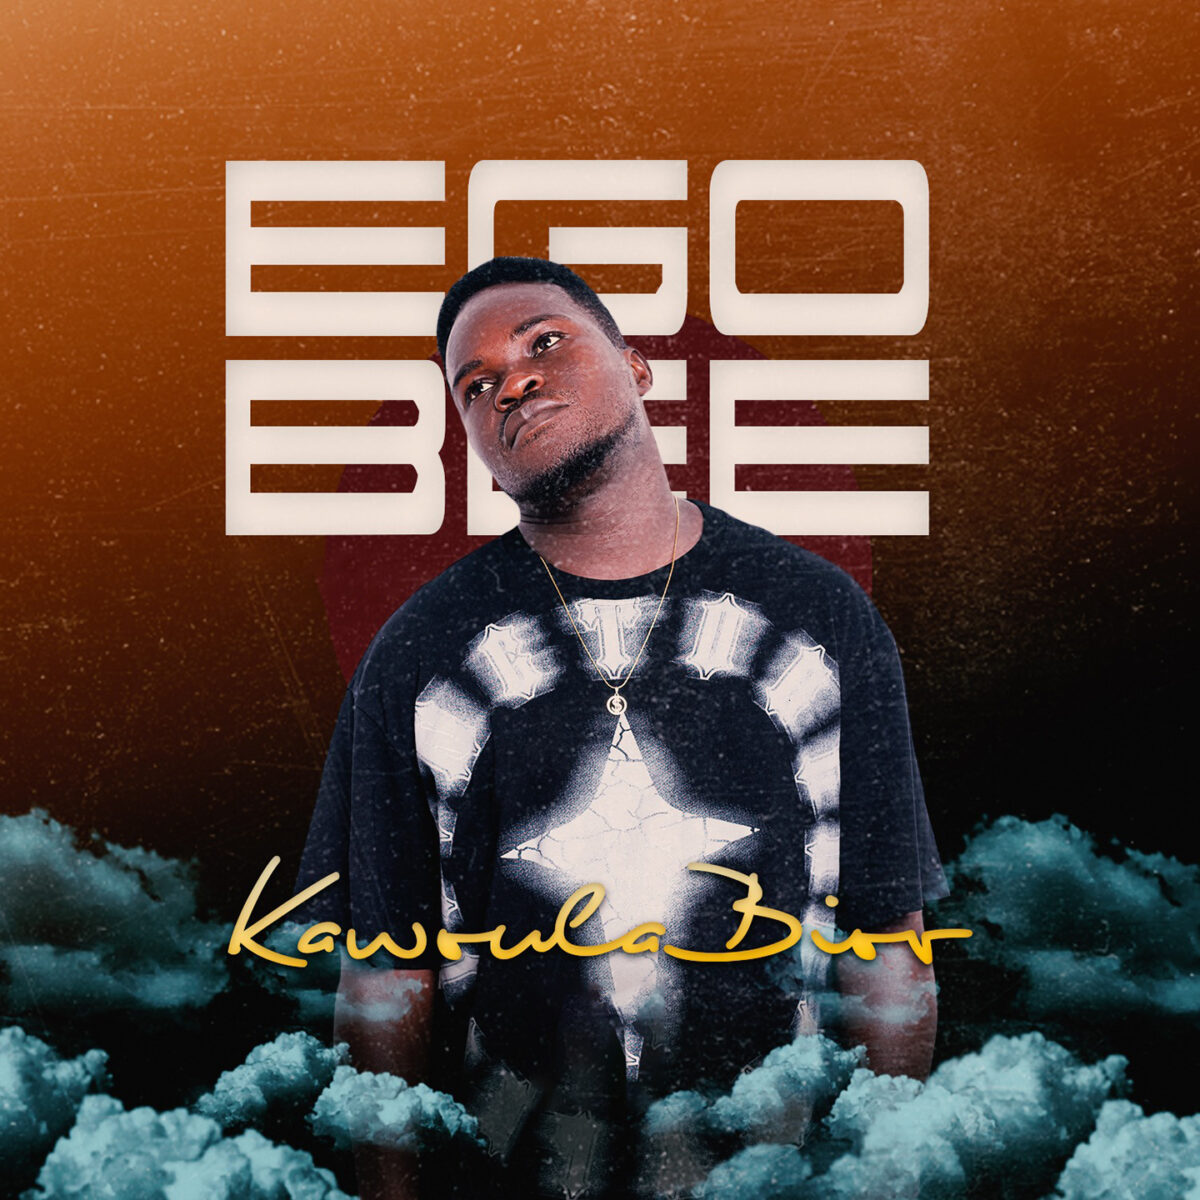 Ego Bee by Kawoula Biov